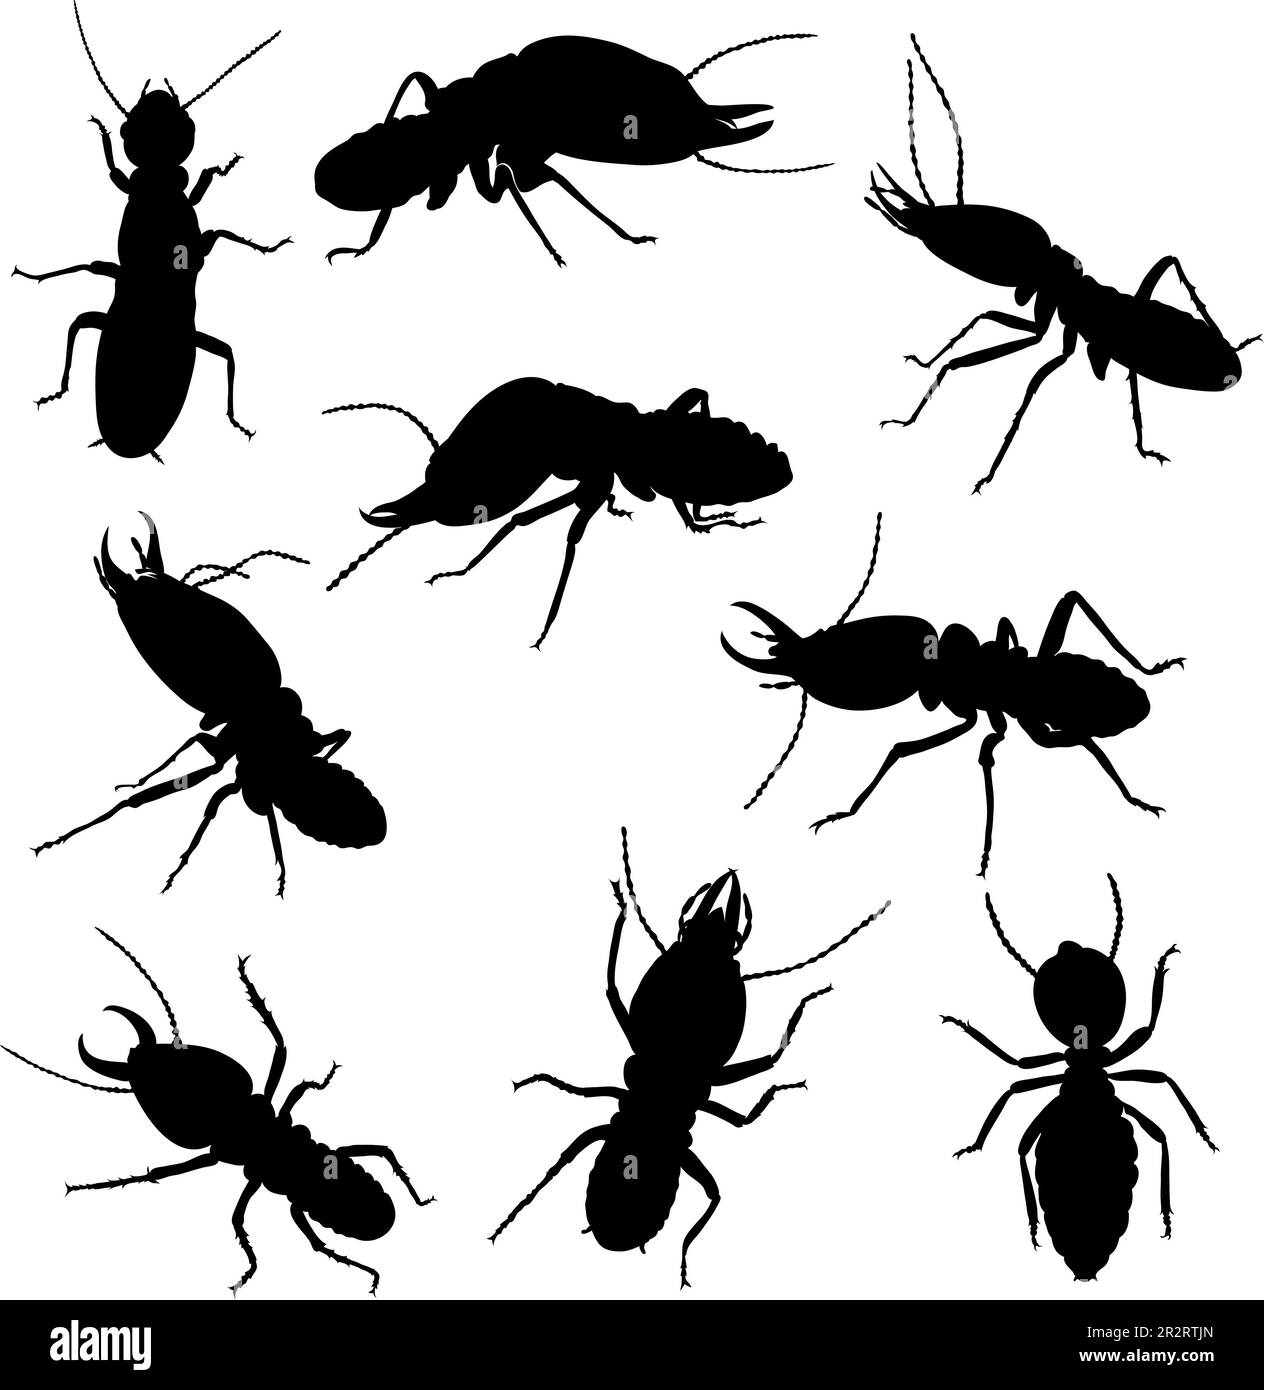 varias poses de termitas en gráficos en blanco y negro, en movimiento y estática, silueta Ilustración del Vector